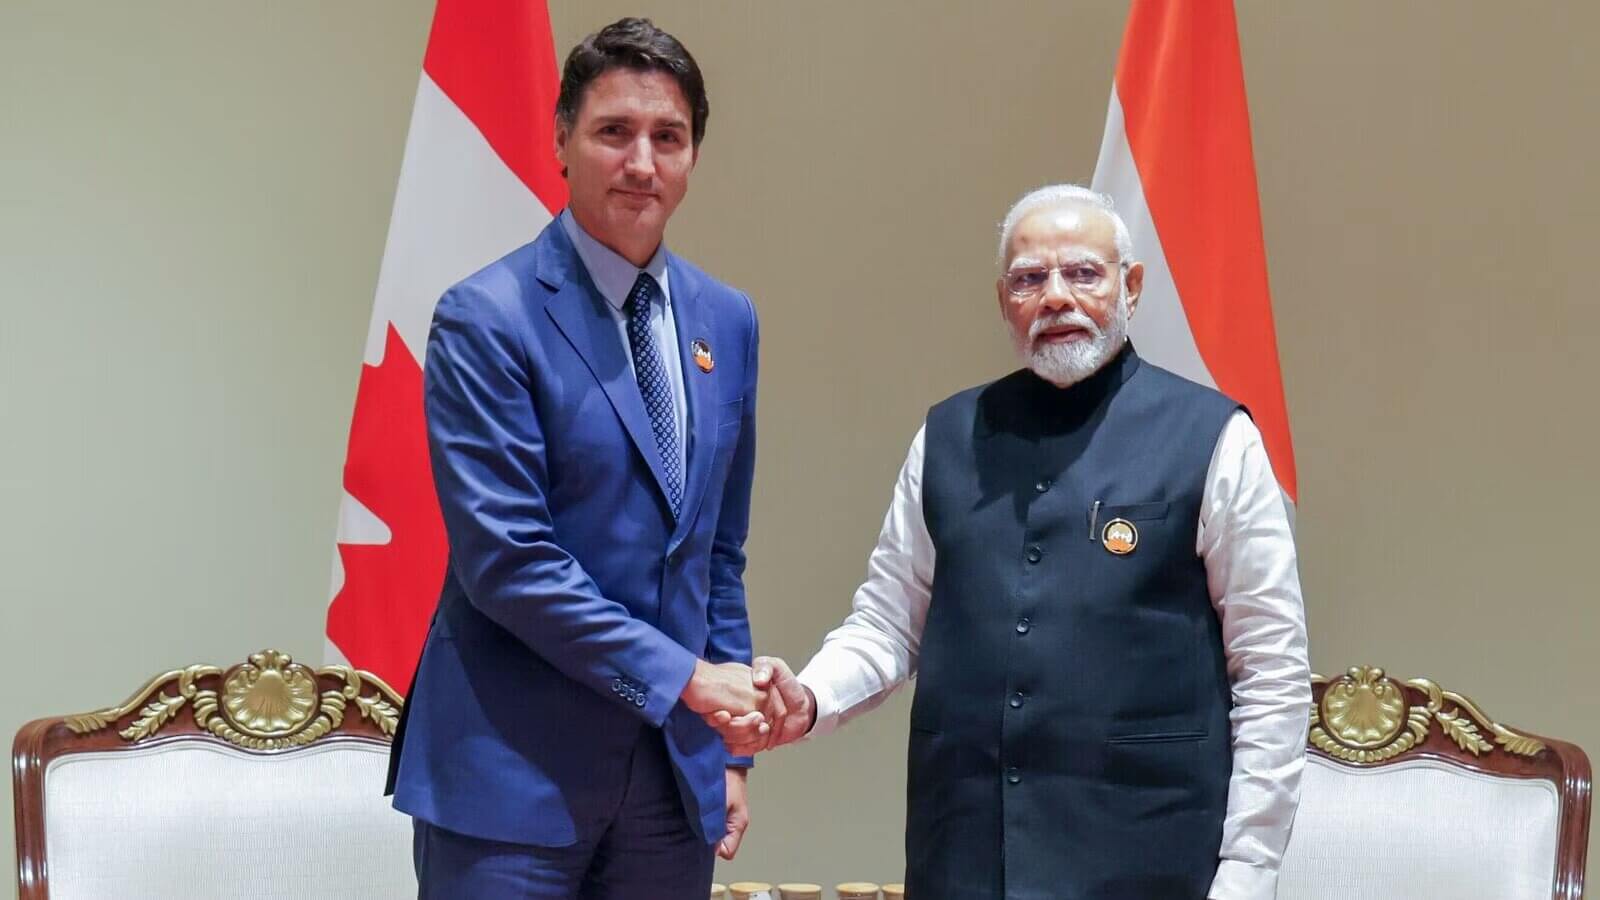 India-Canada Relations Experiencing a “Tonal Shift”: PM Trudeau